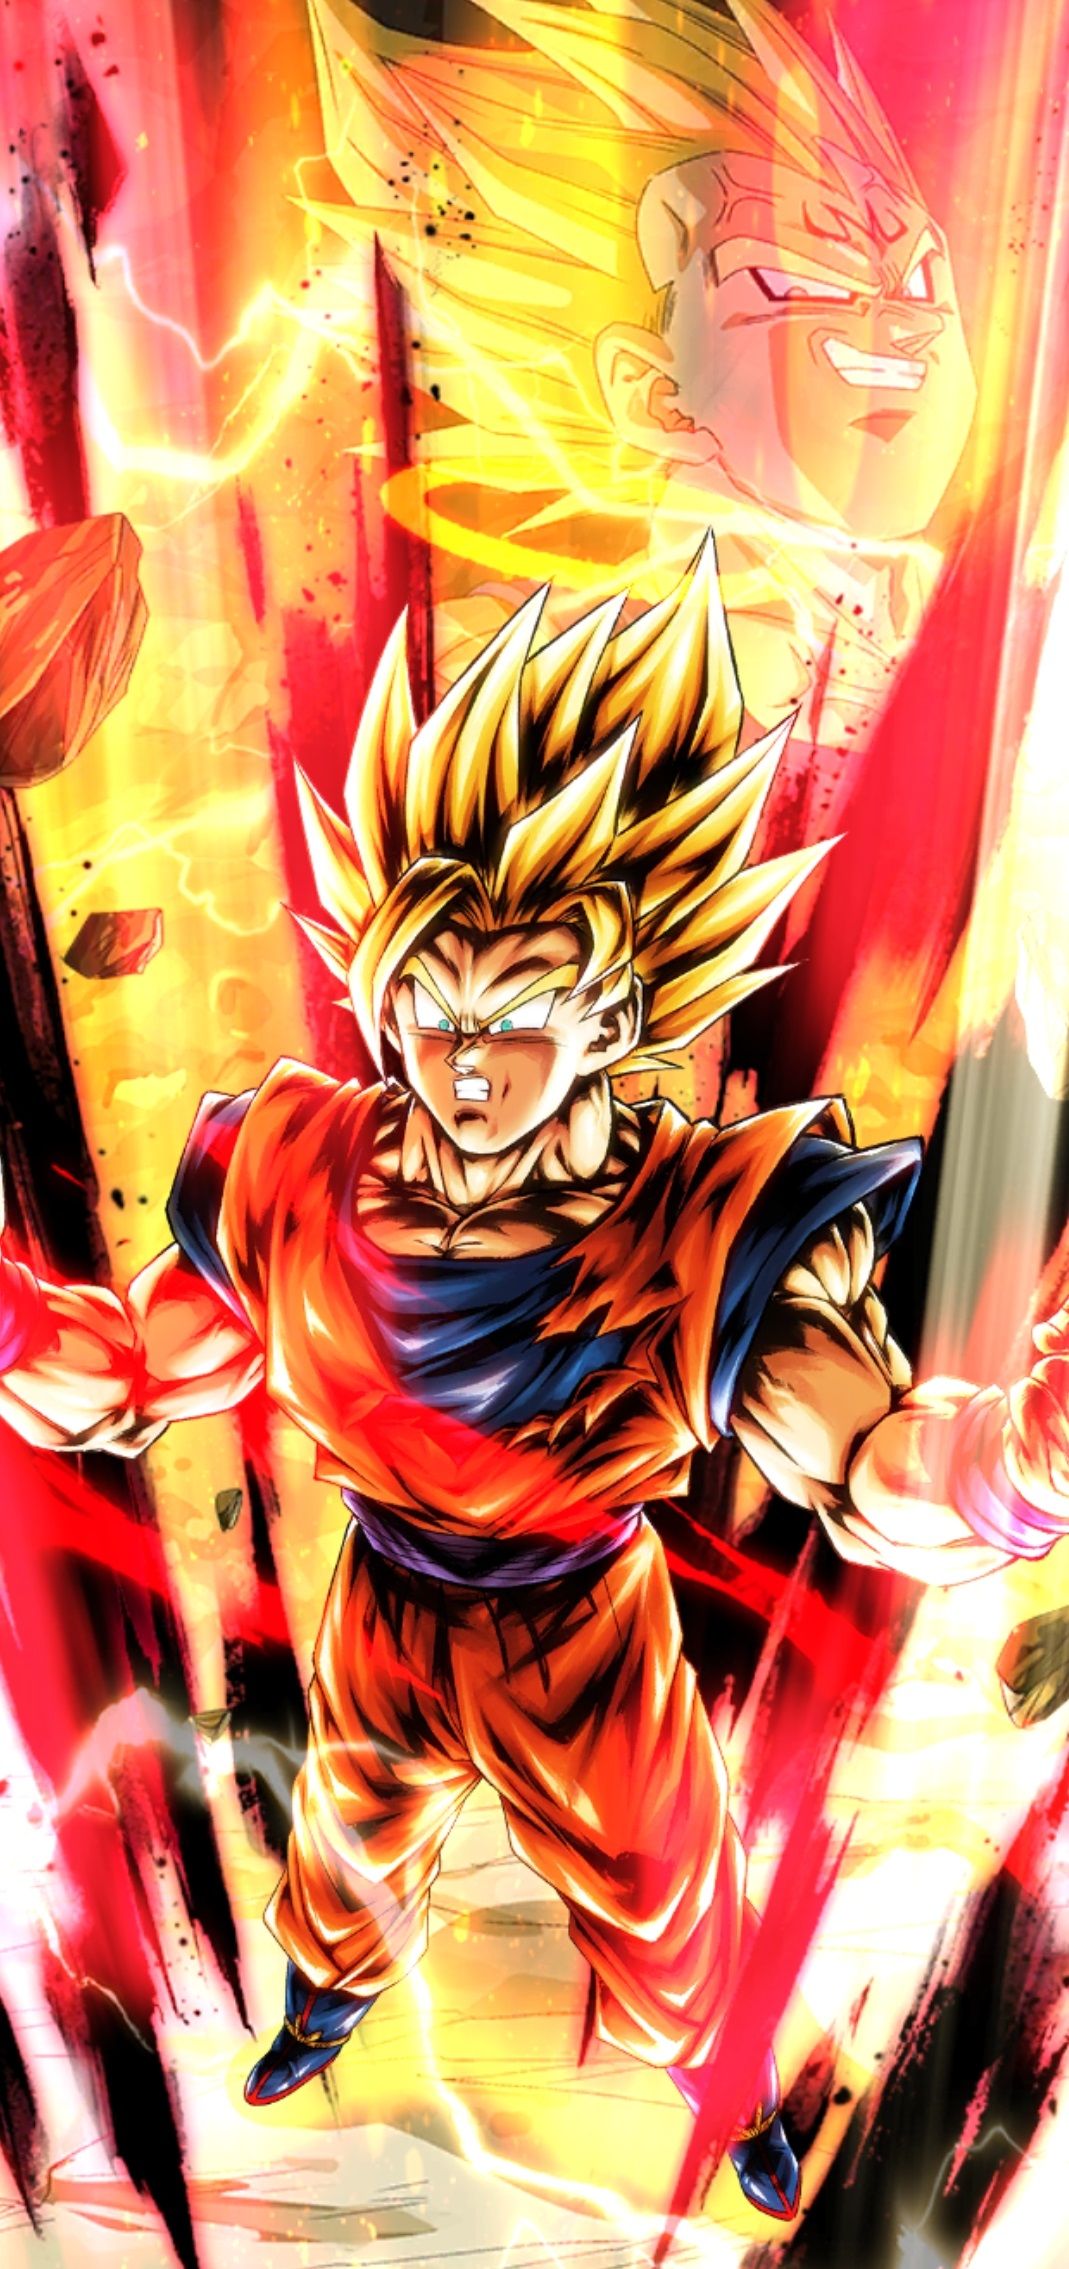 Leyendas de Dragon Ball]SPARKING Super Saiyan 2 Goku BLUAzul atributo nivel  5000 impulso completo Avance ☆ 7+